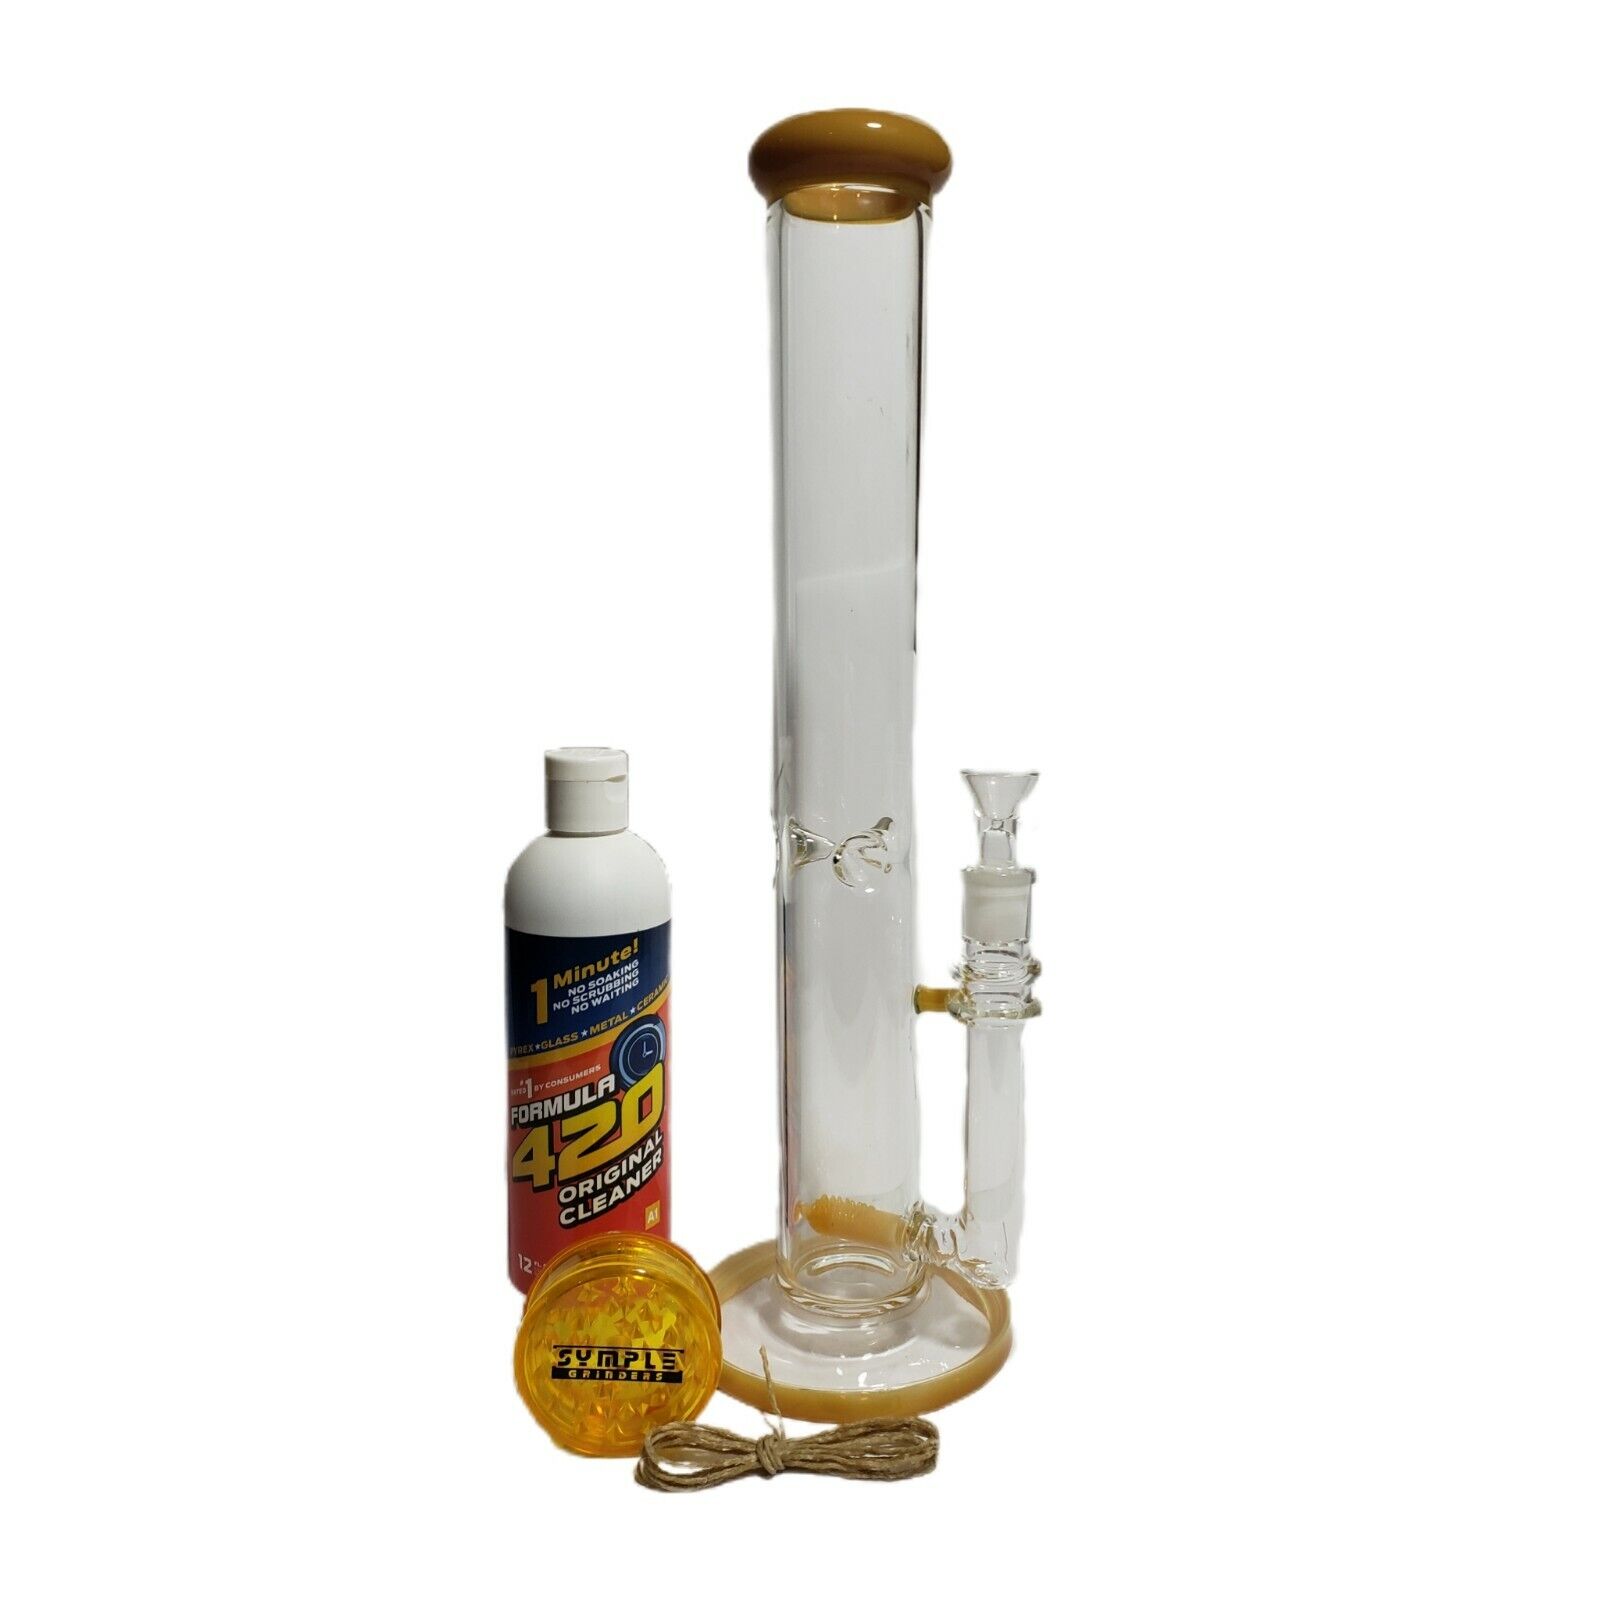 Tobacco waterpipe bundle waterpipe rig set grinder cleaner wick everything shown